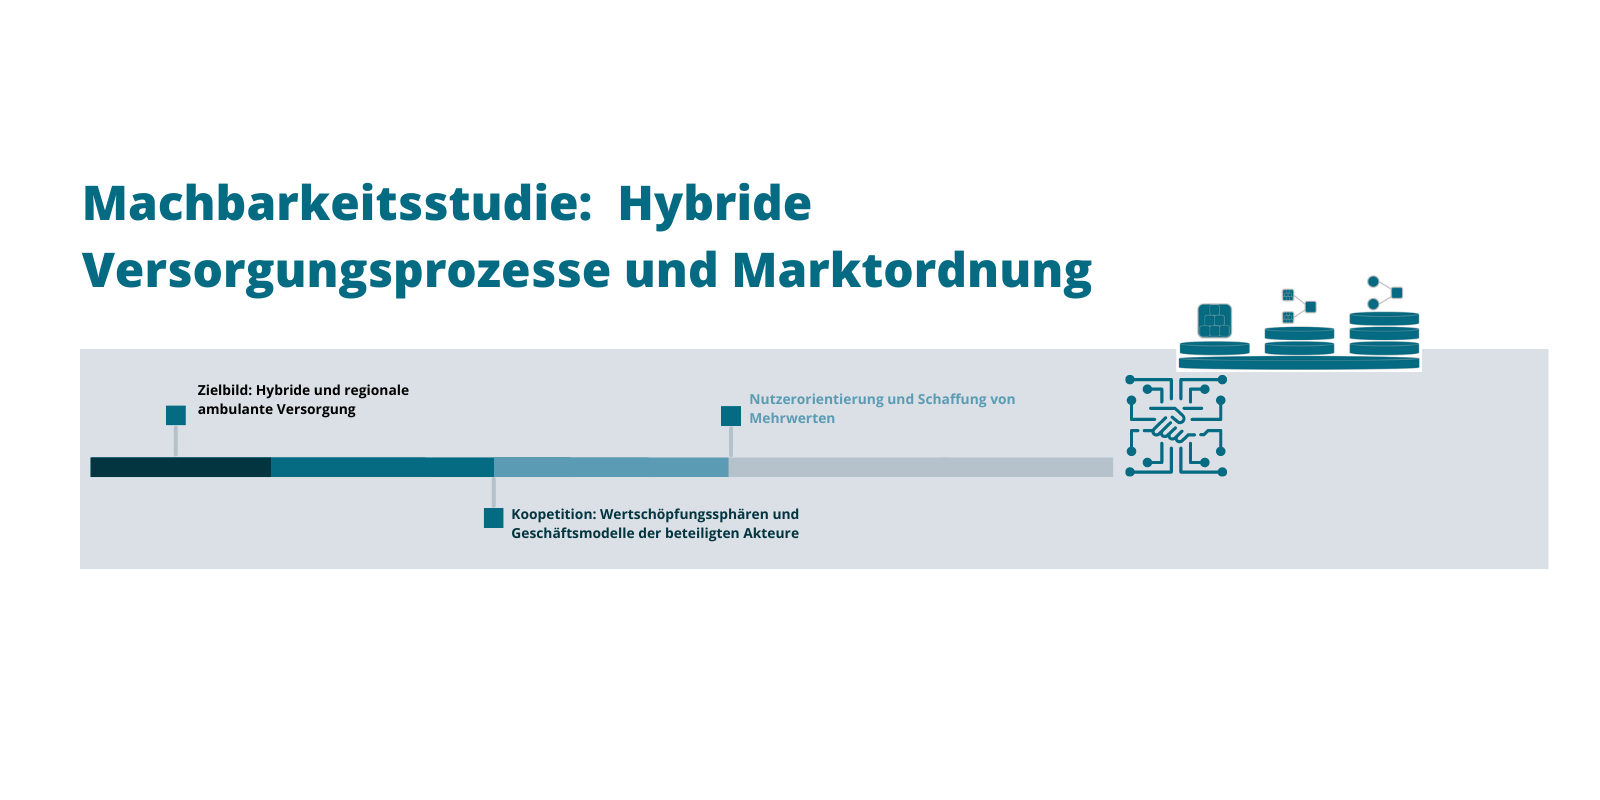 Machbarkeitsstudie: Hybride Versorgungsprozesse und Marktordnung